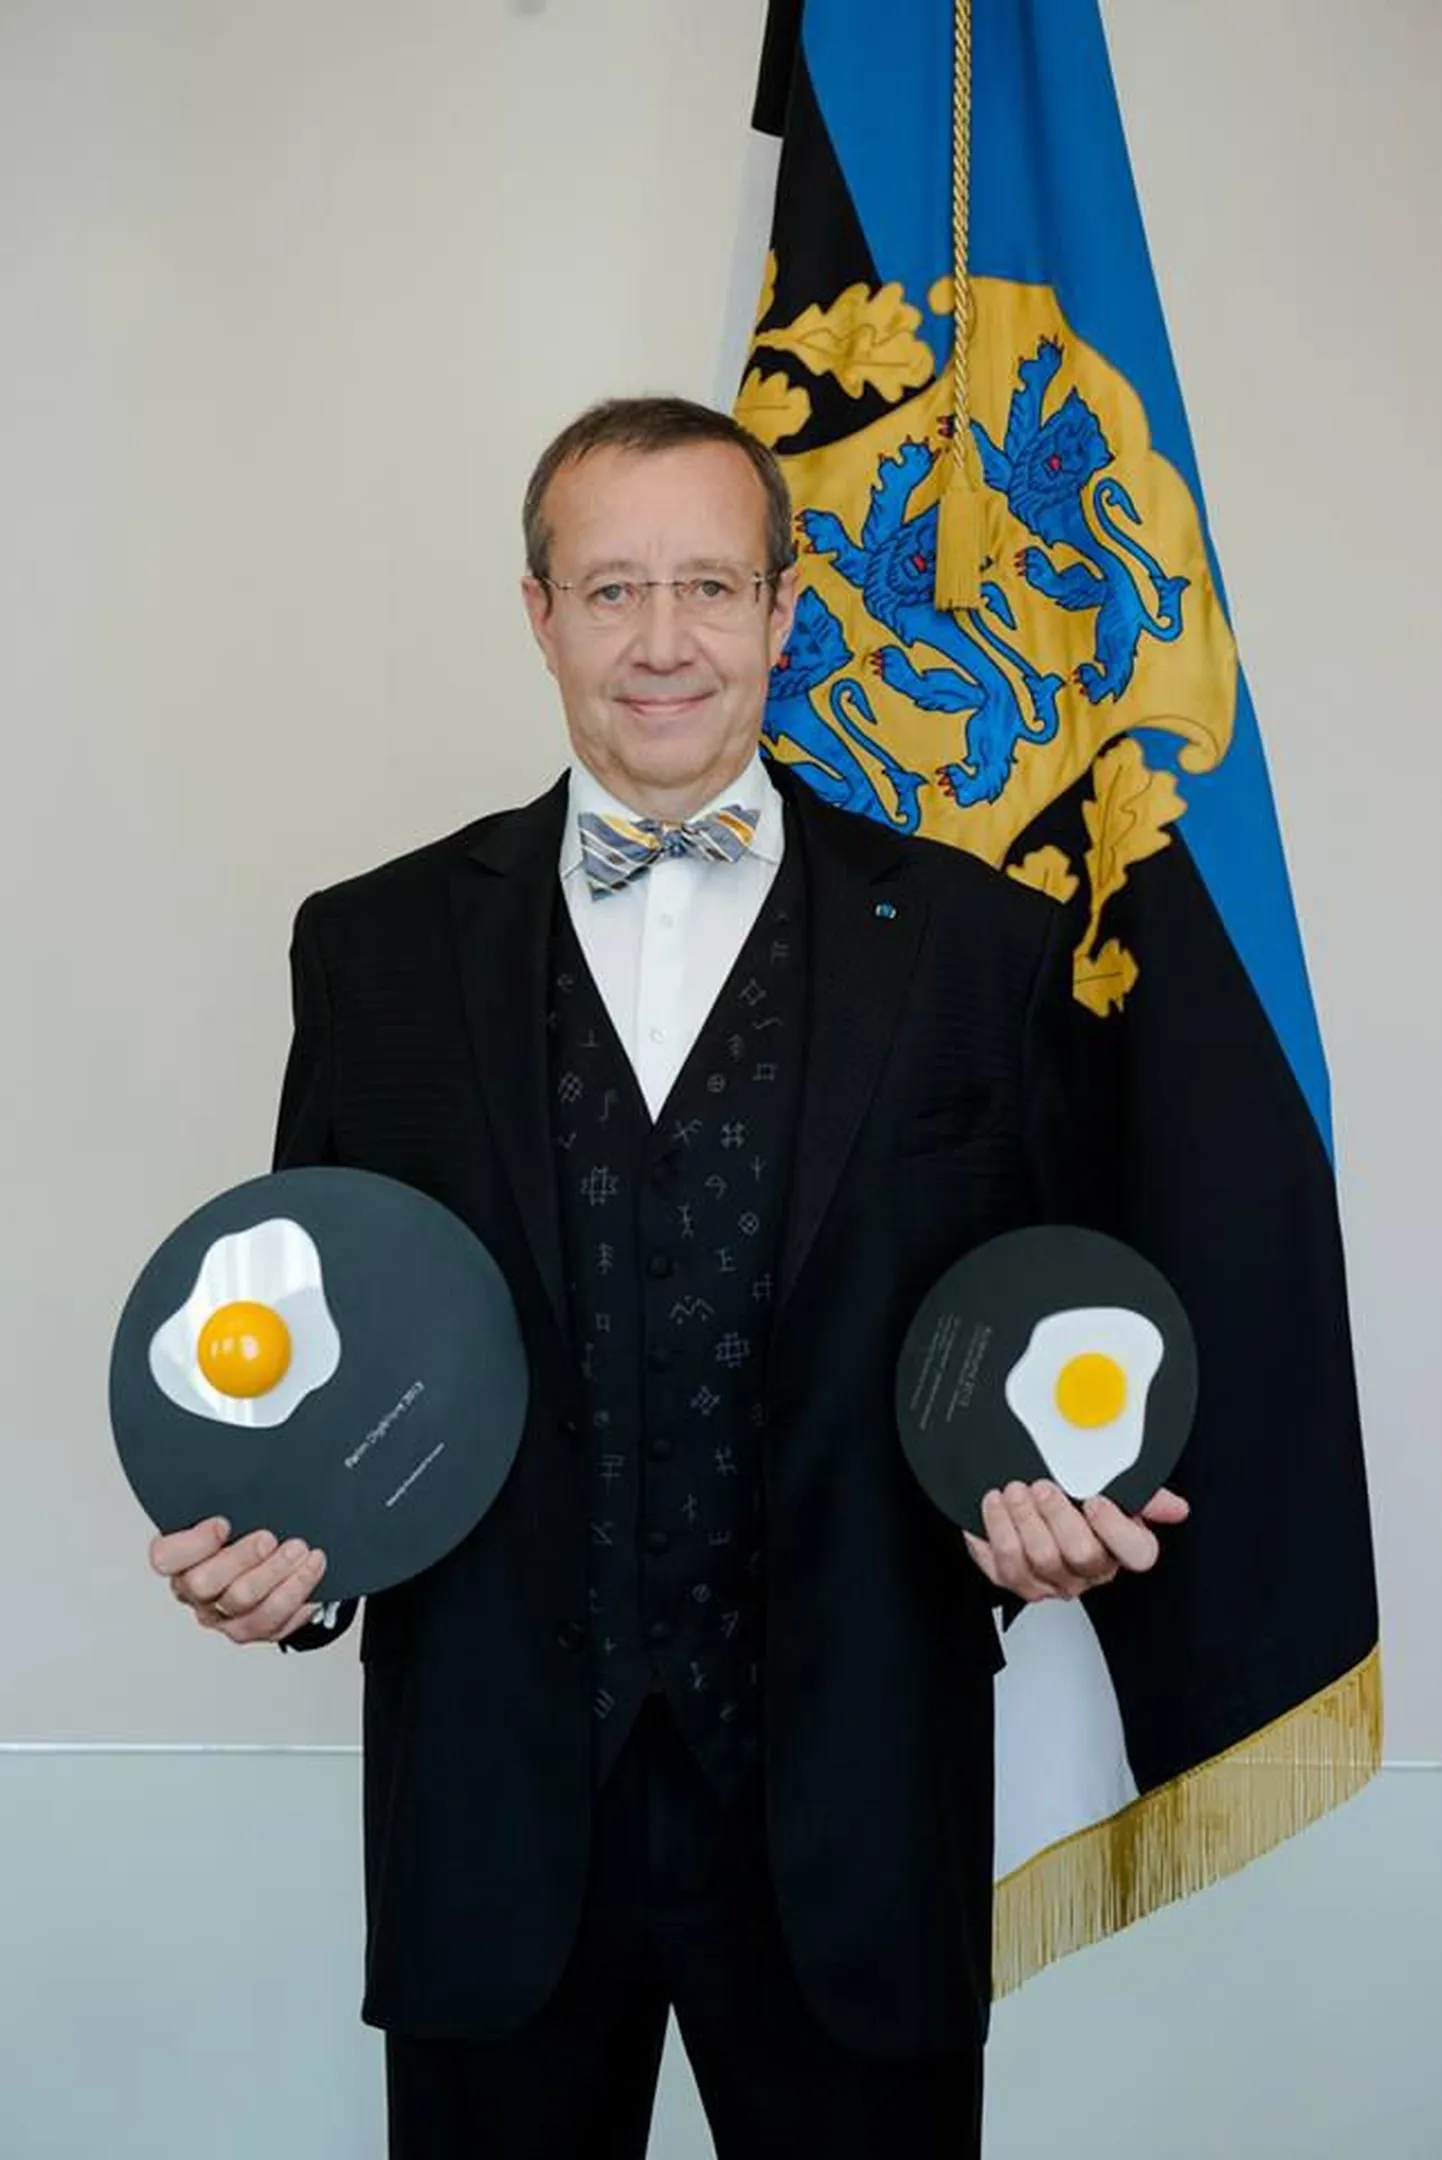 Президент Эстонии получил два яйца - золотое и бронзовое.